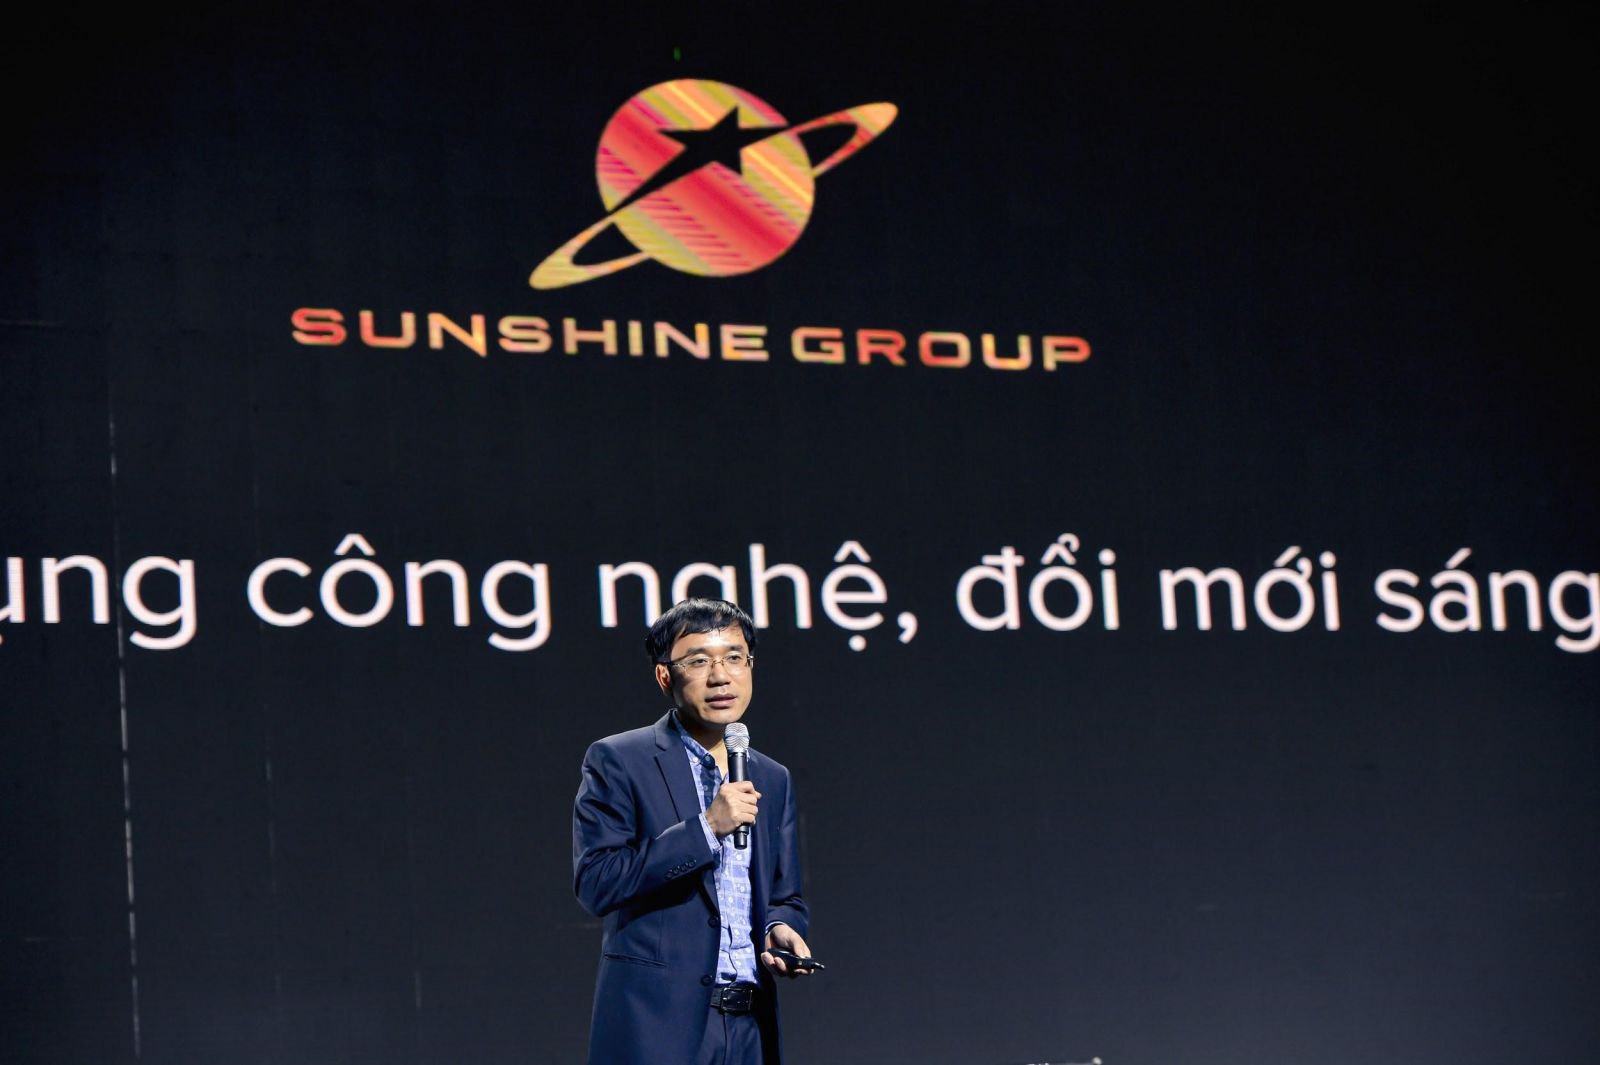 Dấu ấn của Sunshine Group tại Triển lãm quốc tế Đổi mới sáng tạo Việt Nam 2021